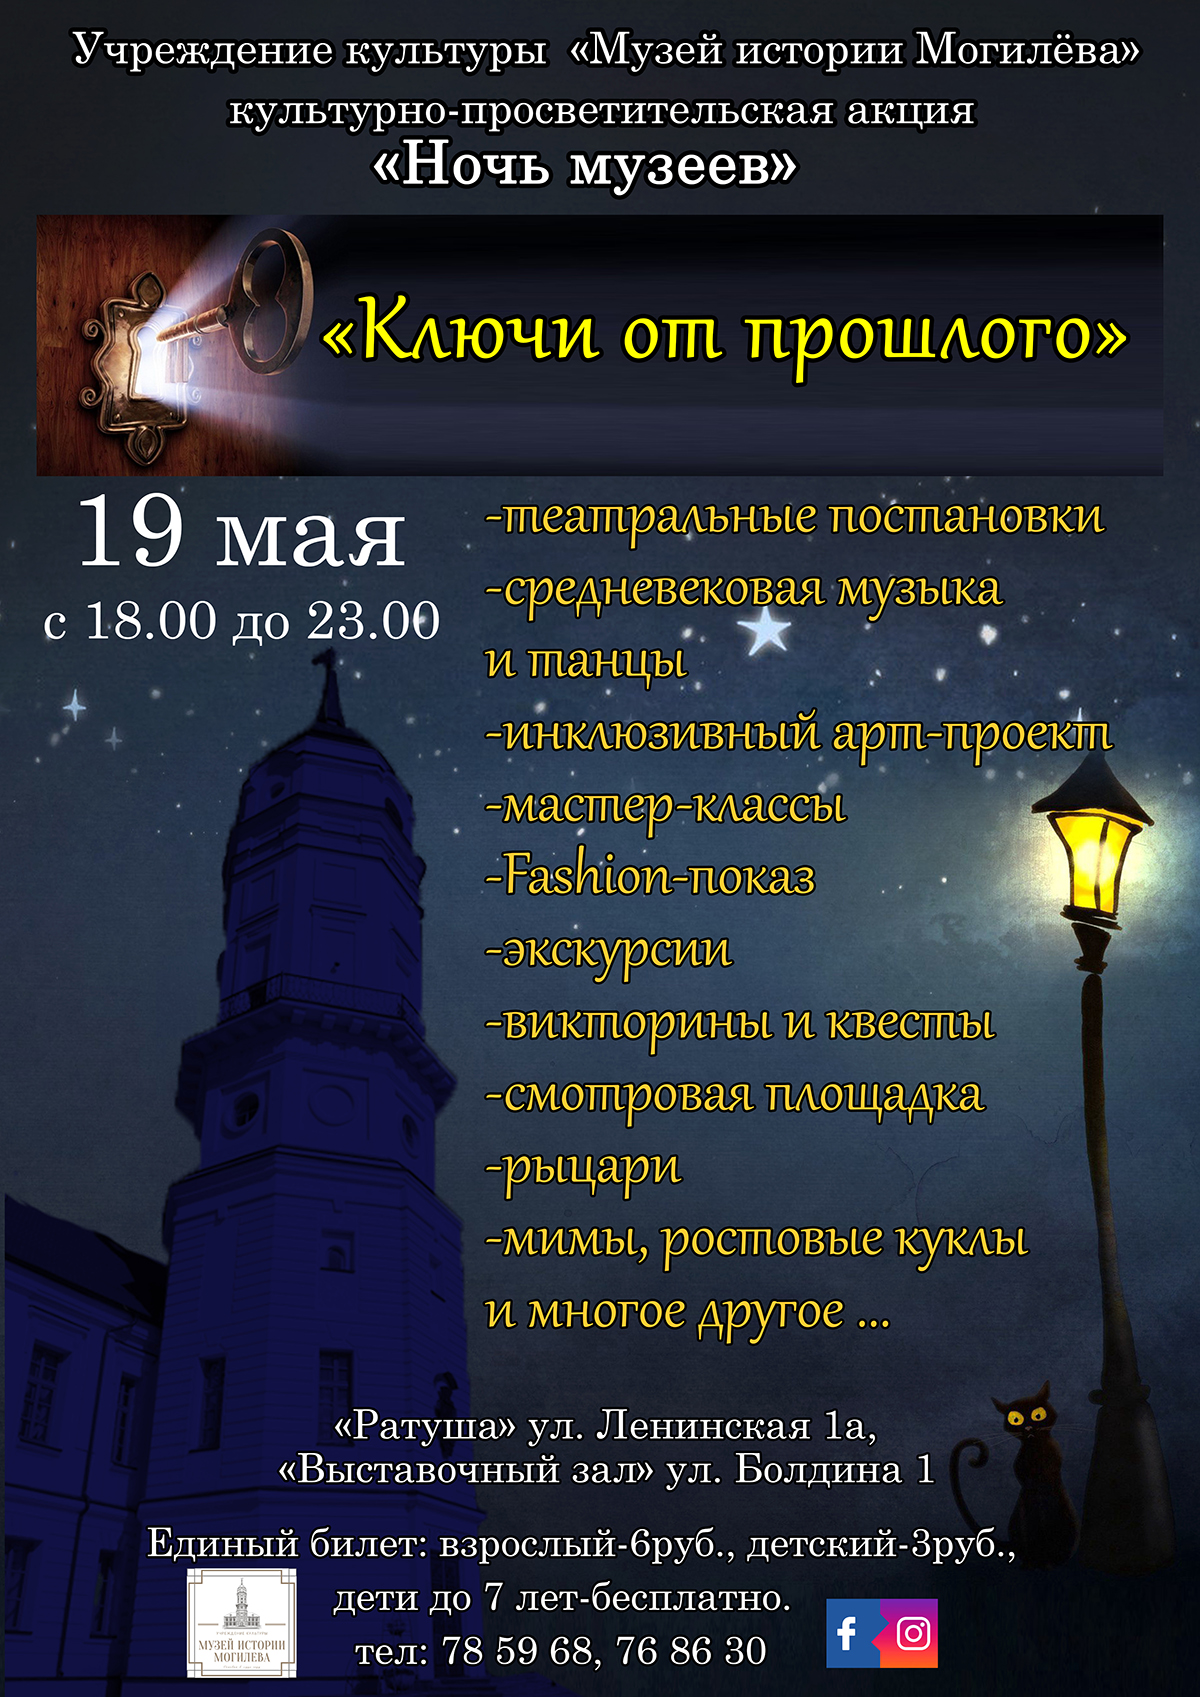 Музей истории Могилева приглашает горожан 19 мая на «Ночь музеев»